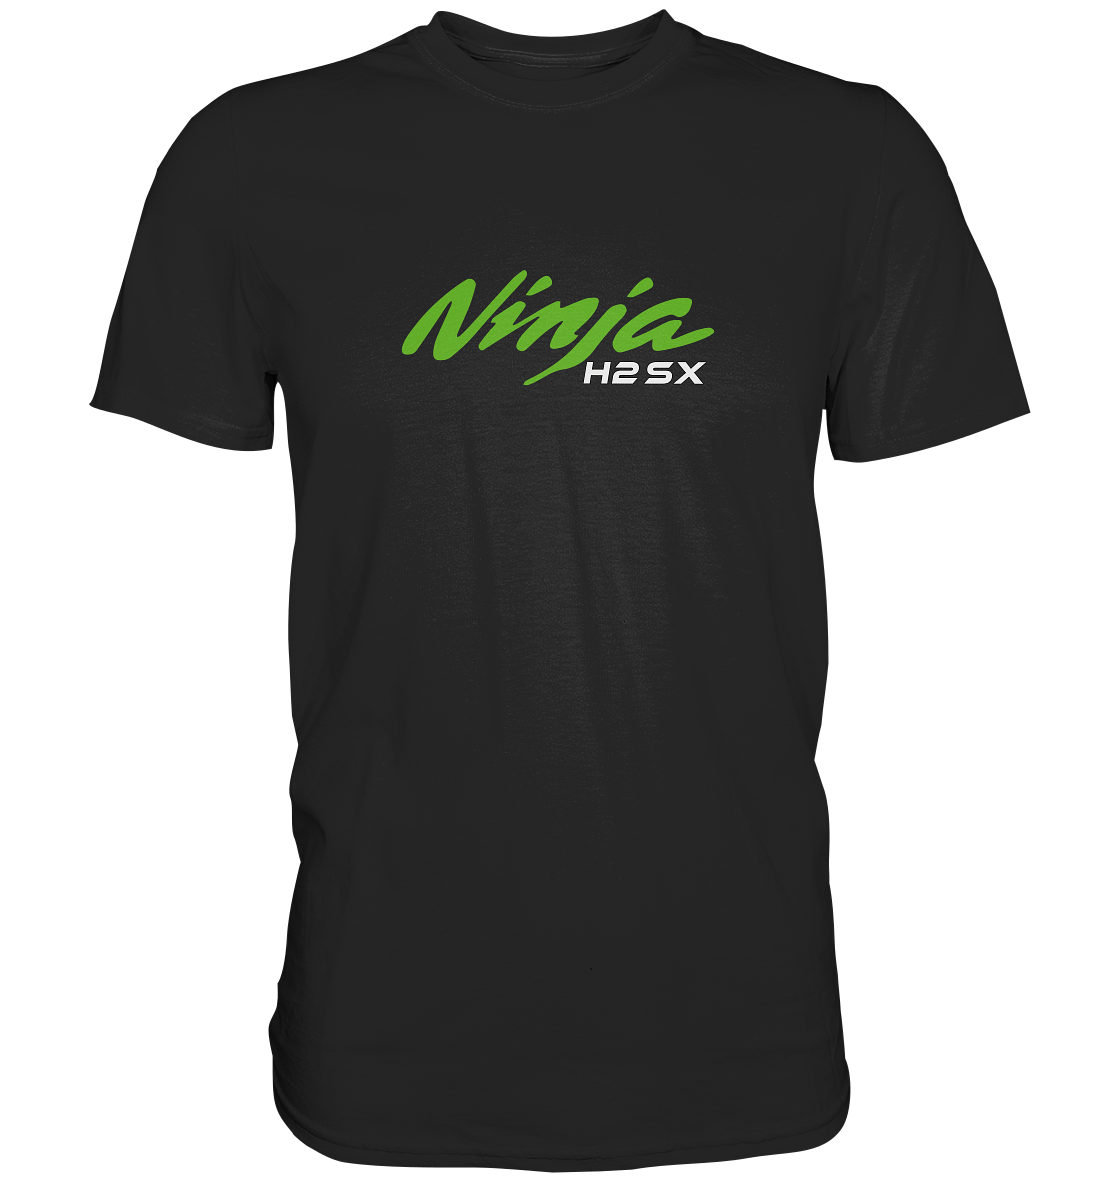 Ninja H2 SX - Premium unisex Shirt